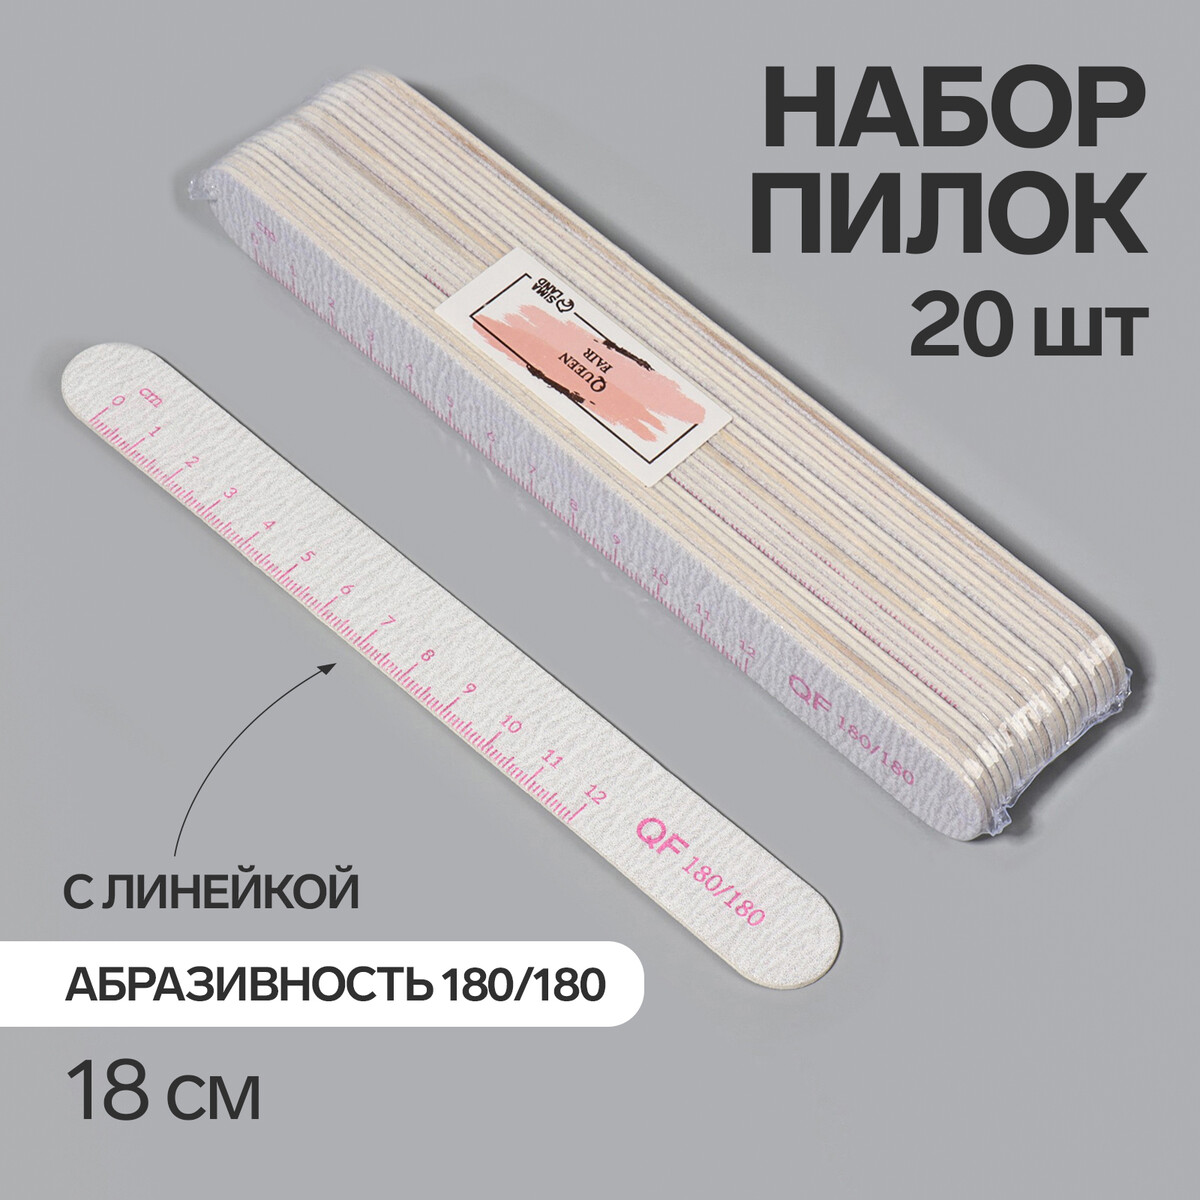 Пилка-наждак, набор 20 шт, абразивность 180, 18 см, цвет серый/розовый пилка наждак абразивность 80 100 18 см